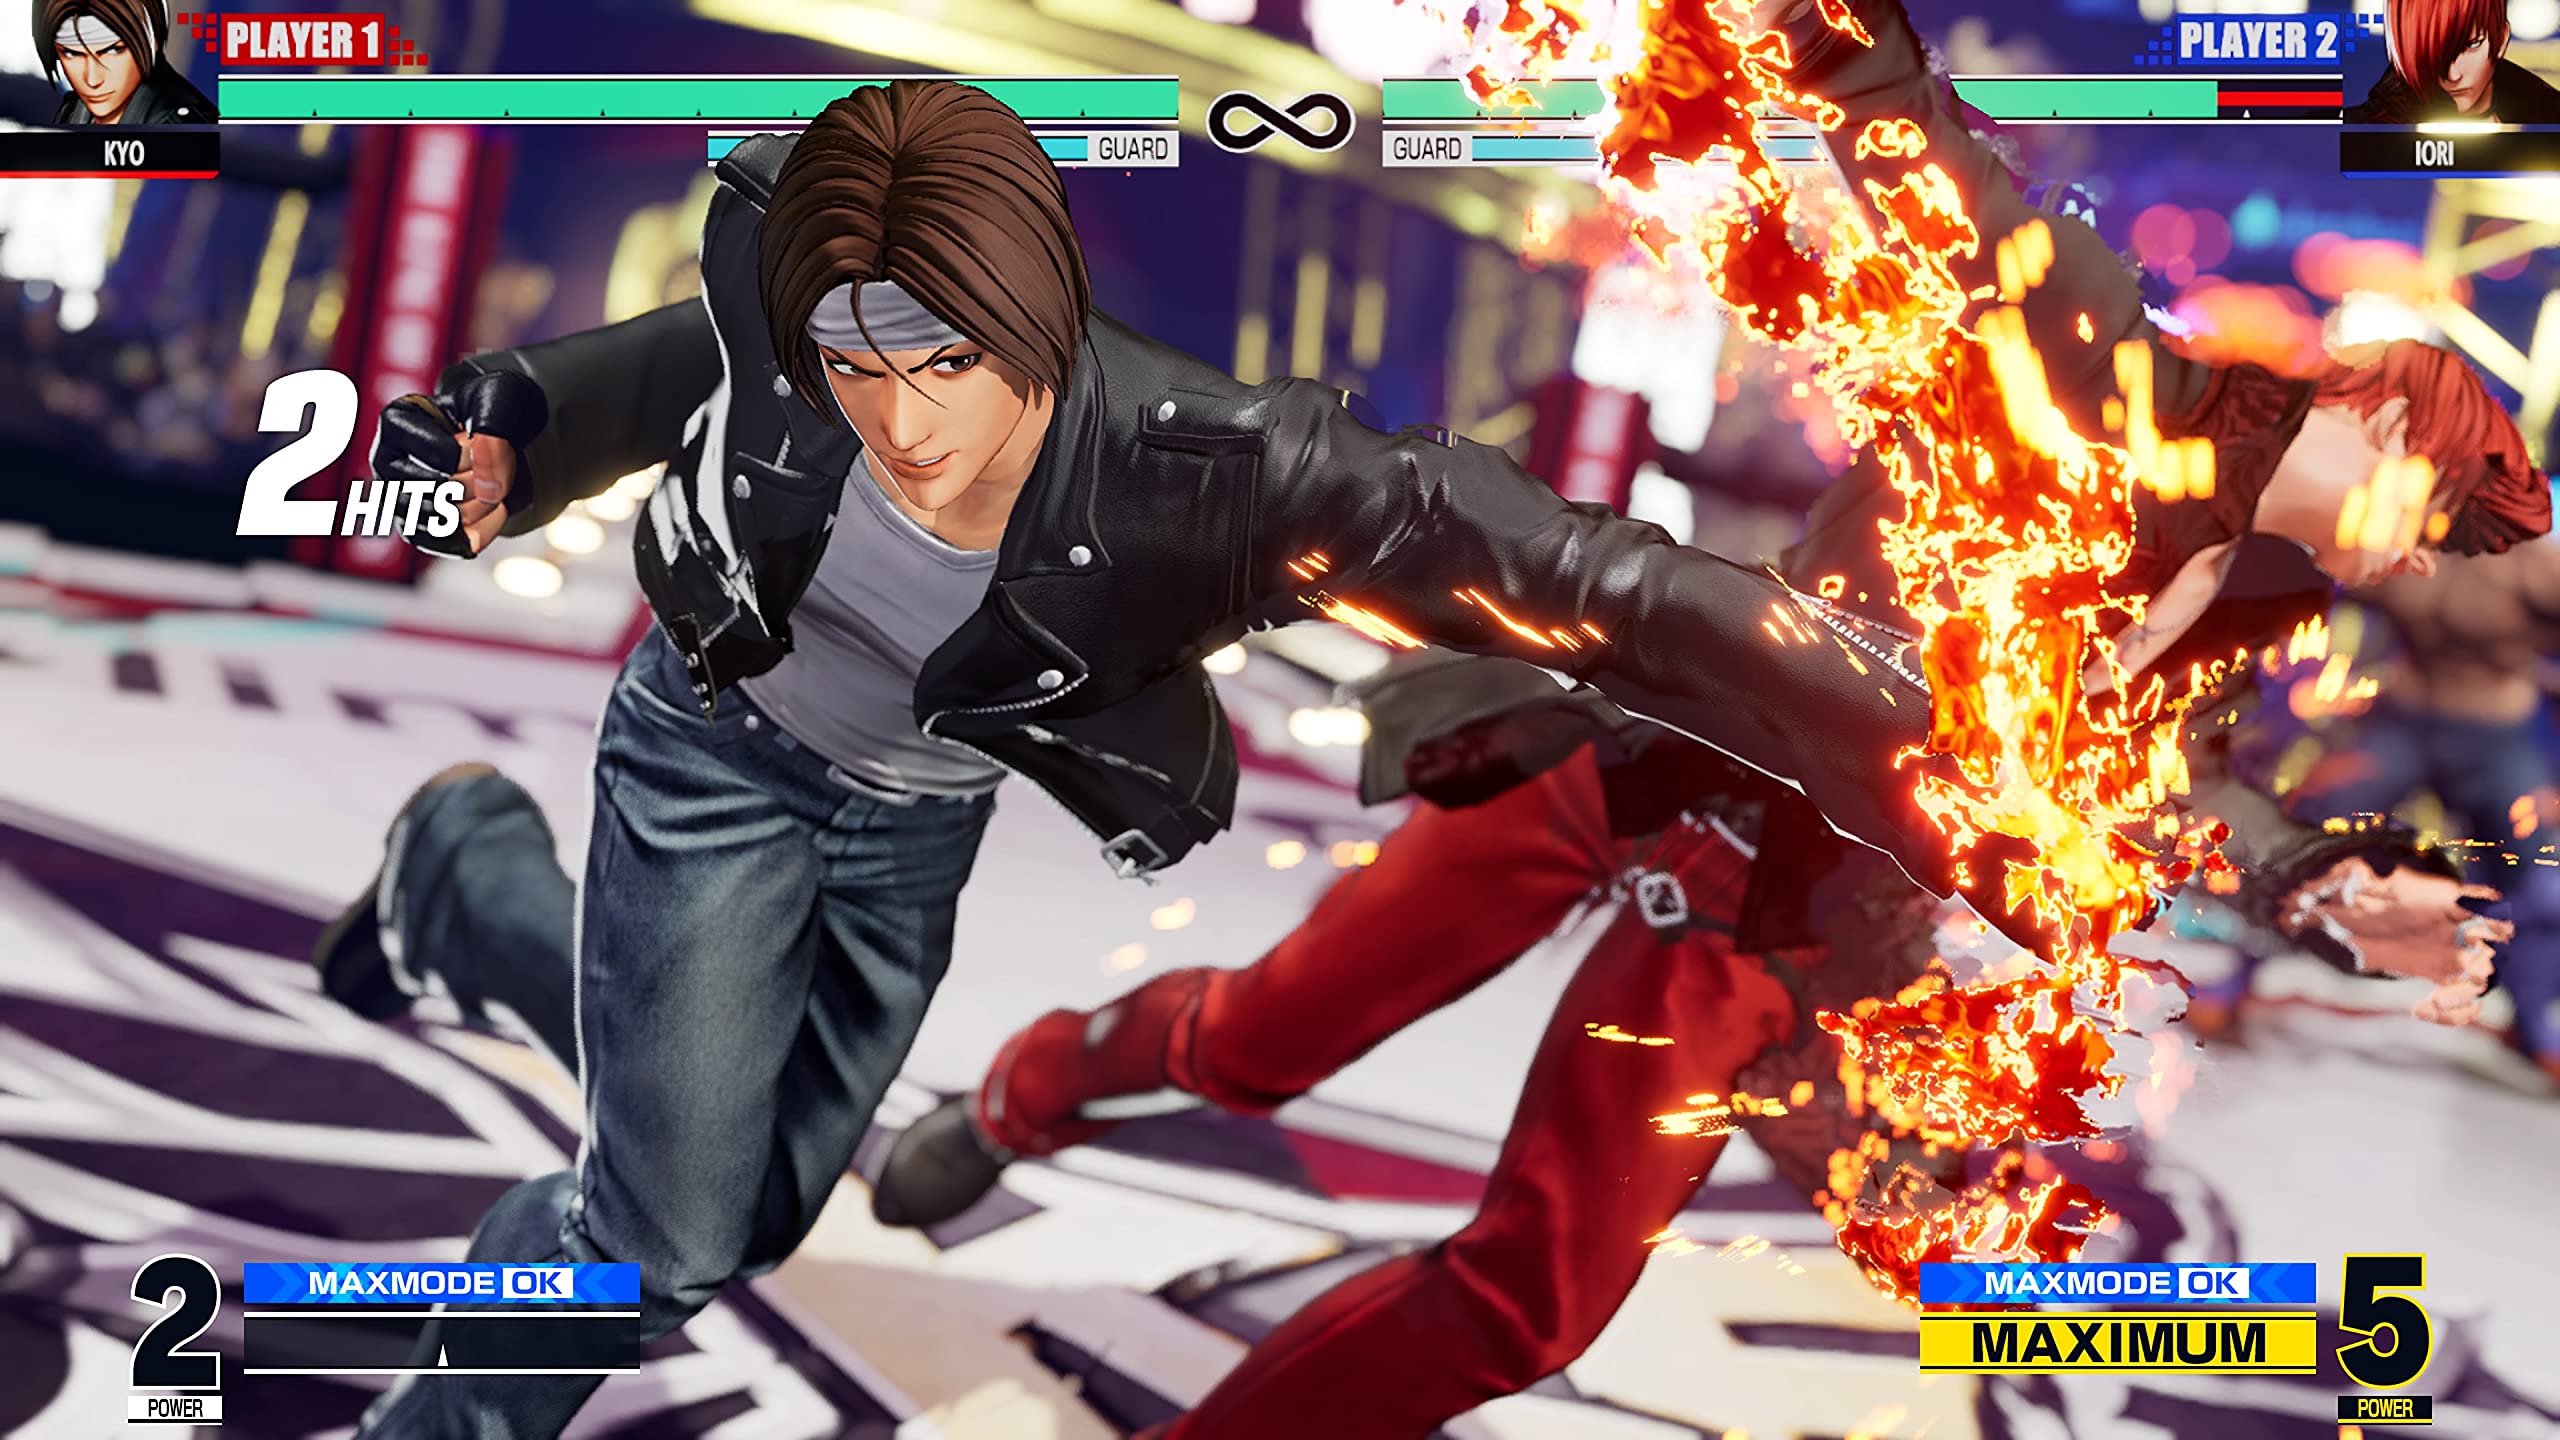 SNK zapowiedziało nowy system ofensywny, Advanced Strike, w kolejnej aktualizacji The King of Fighters 15, która zostanie wydana 30 stycznia